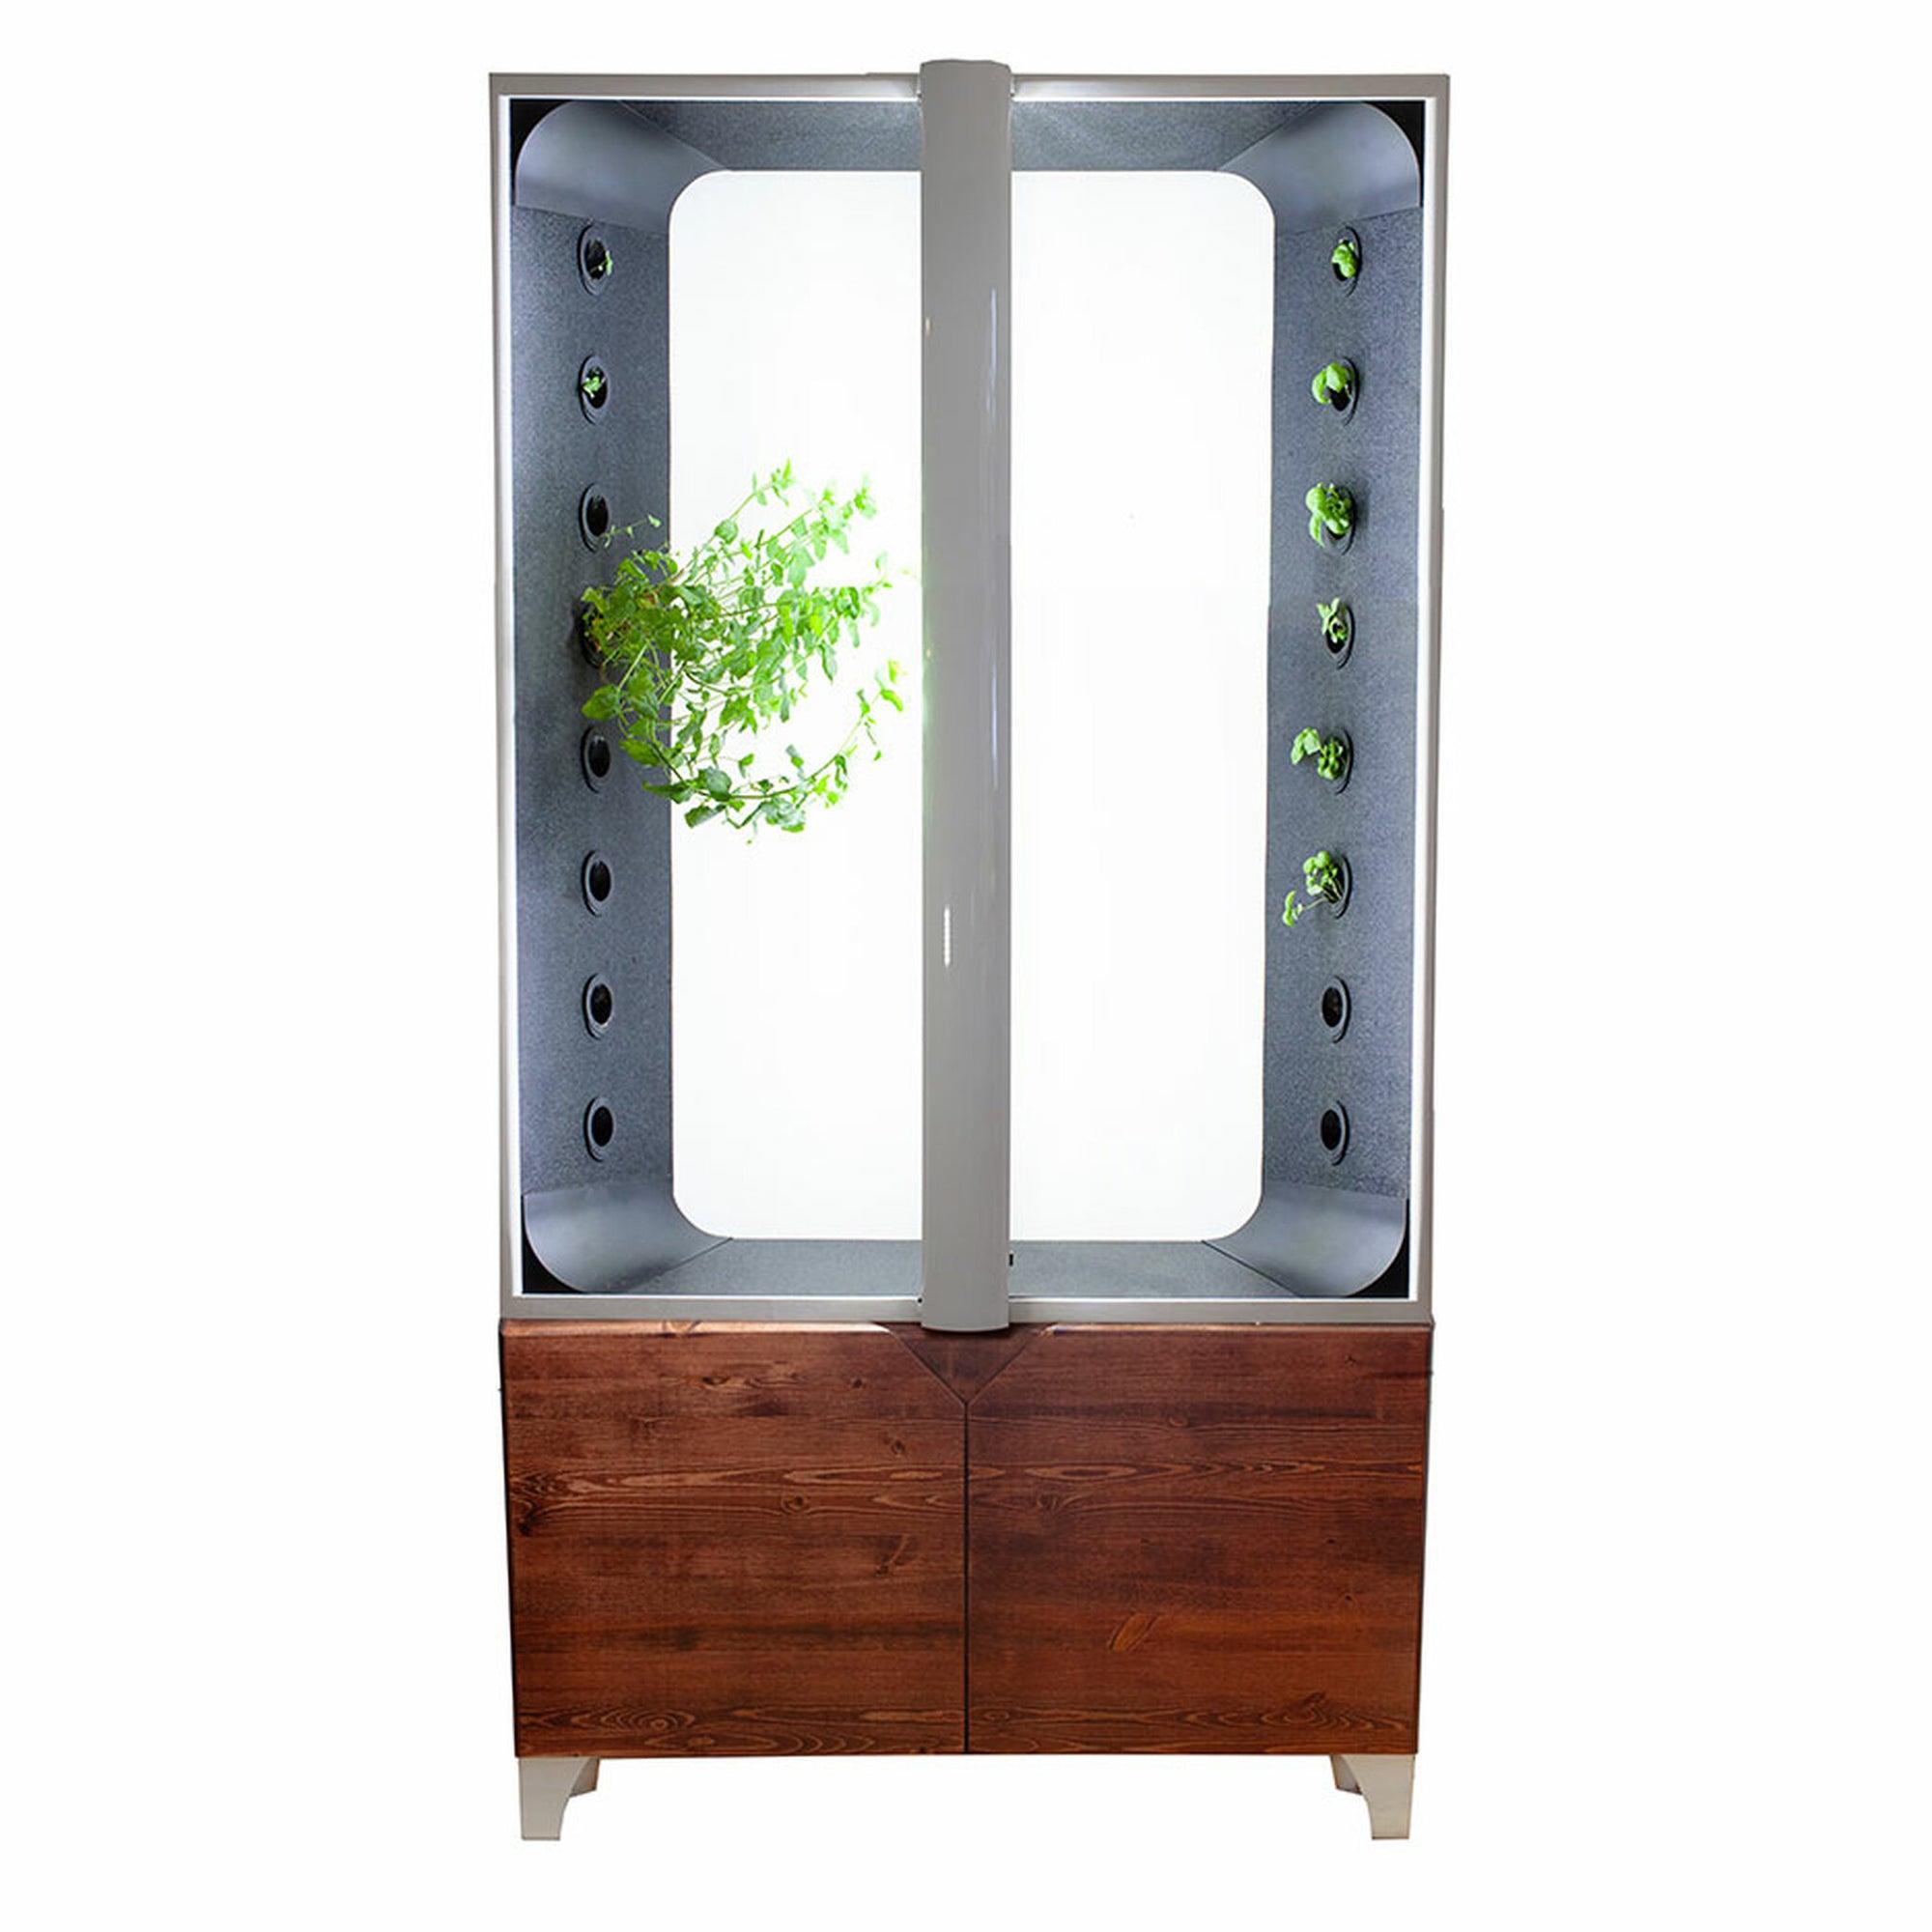 Just Vertical the indoor hydroponic garden Aeva 